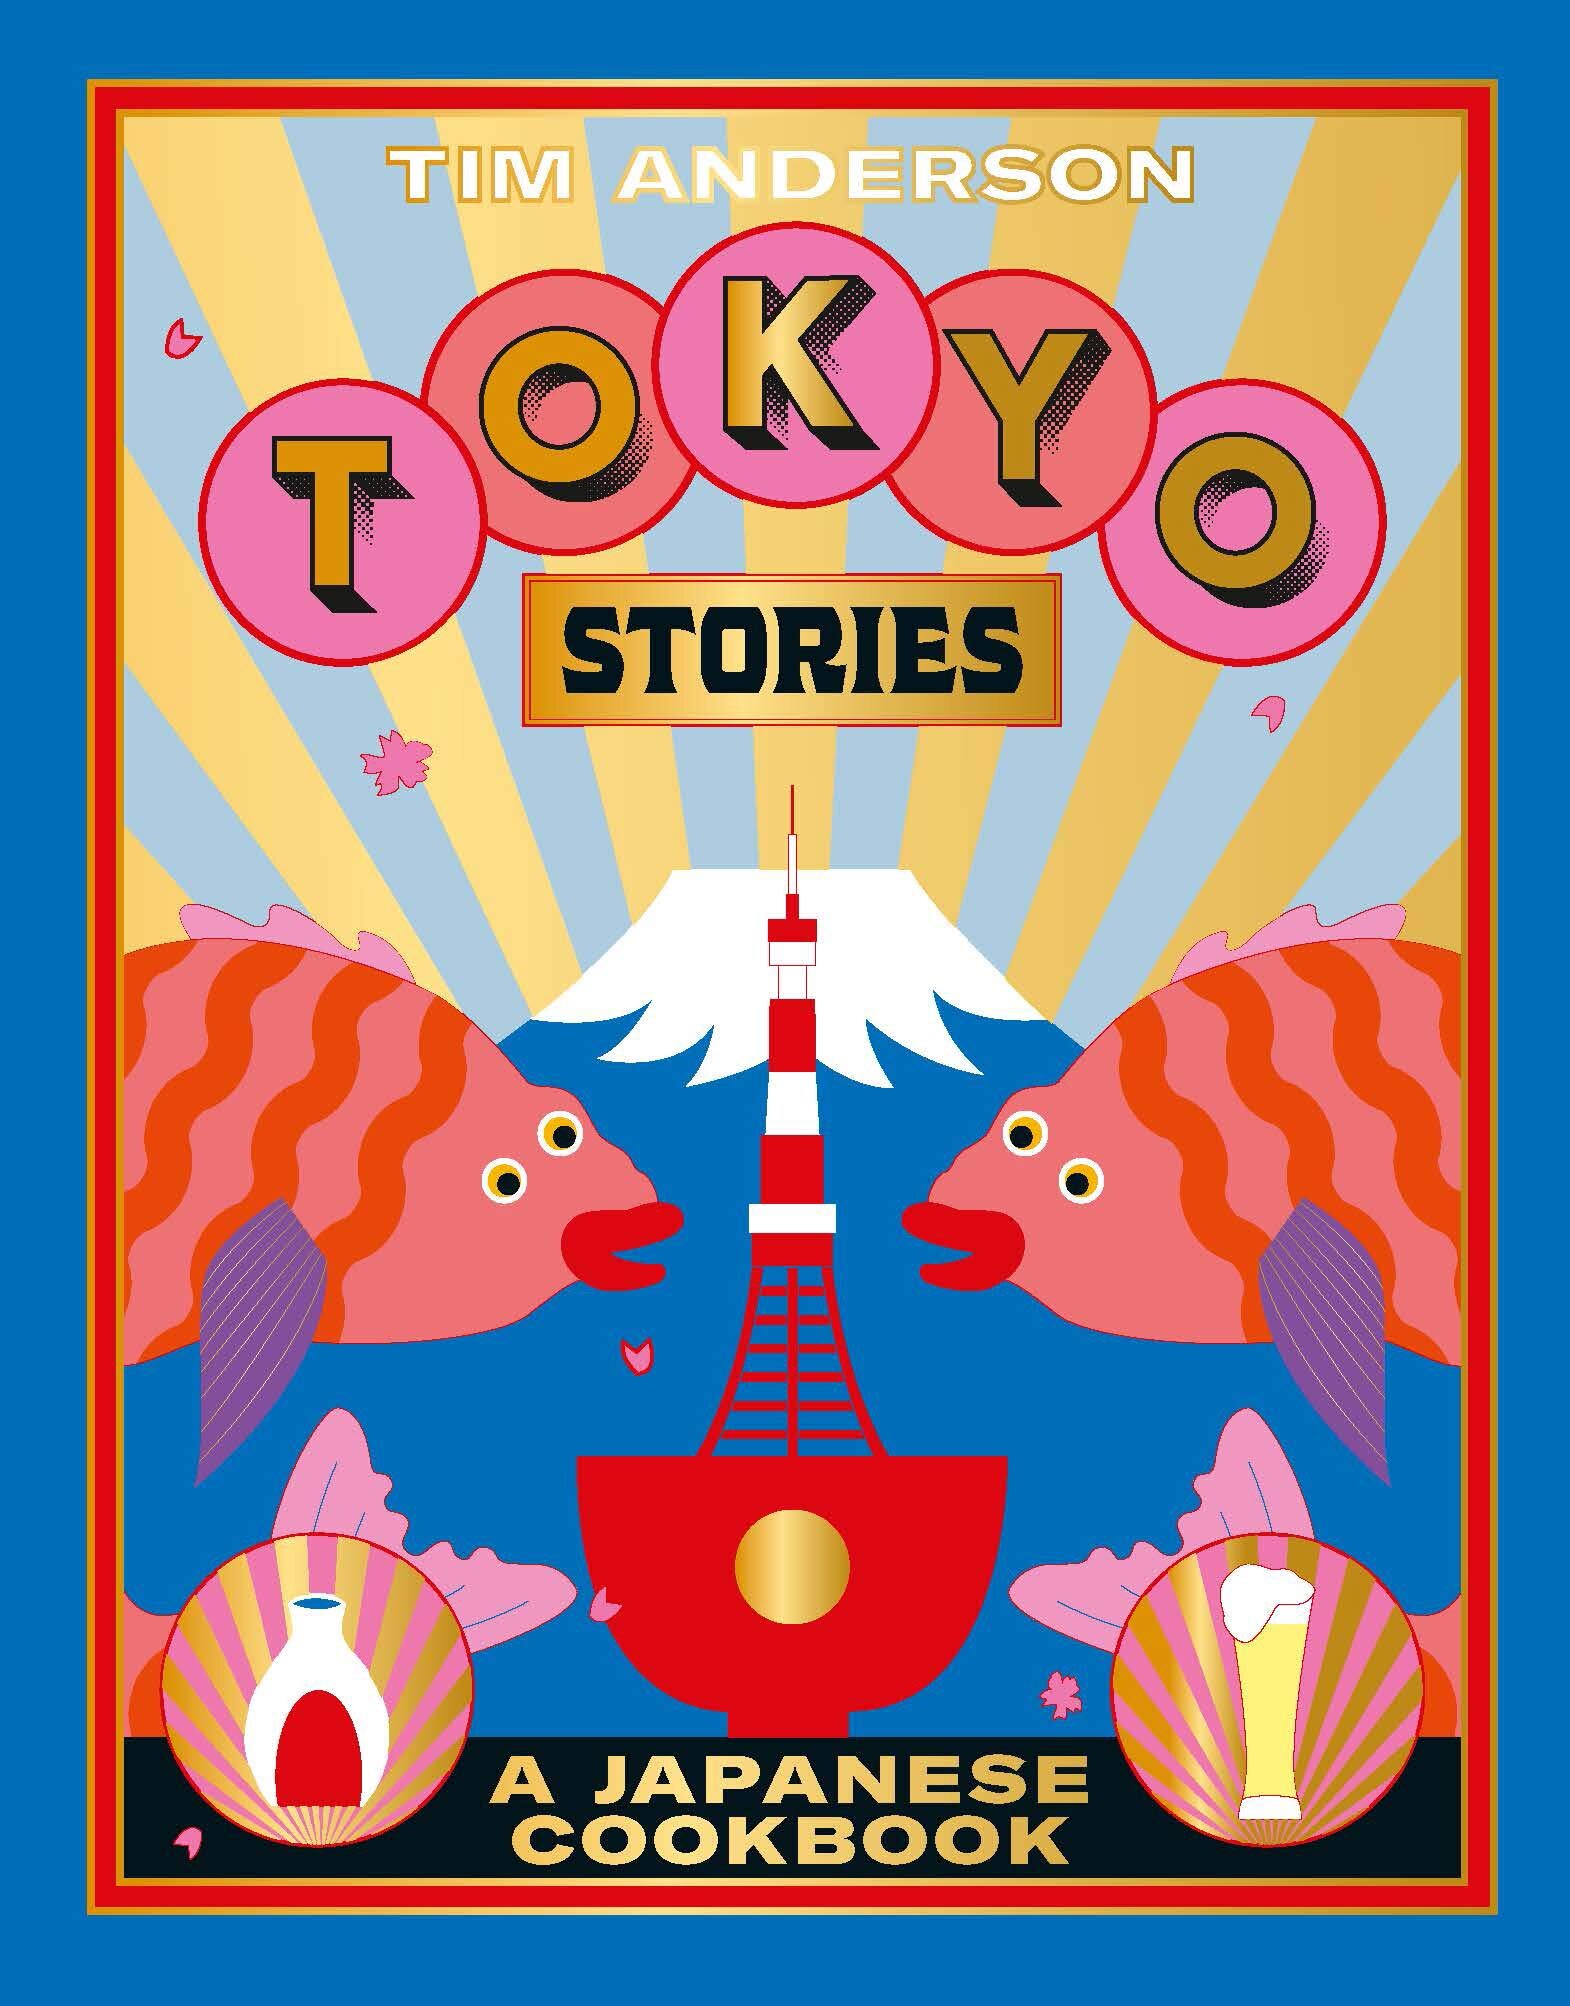 Toykoyo stories1.jpg